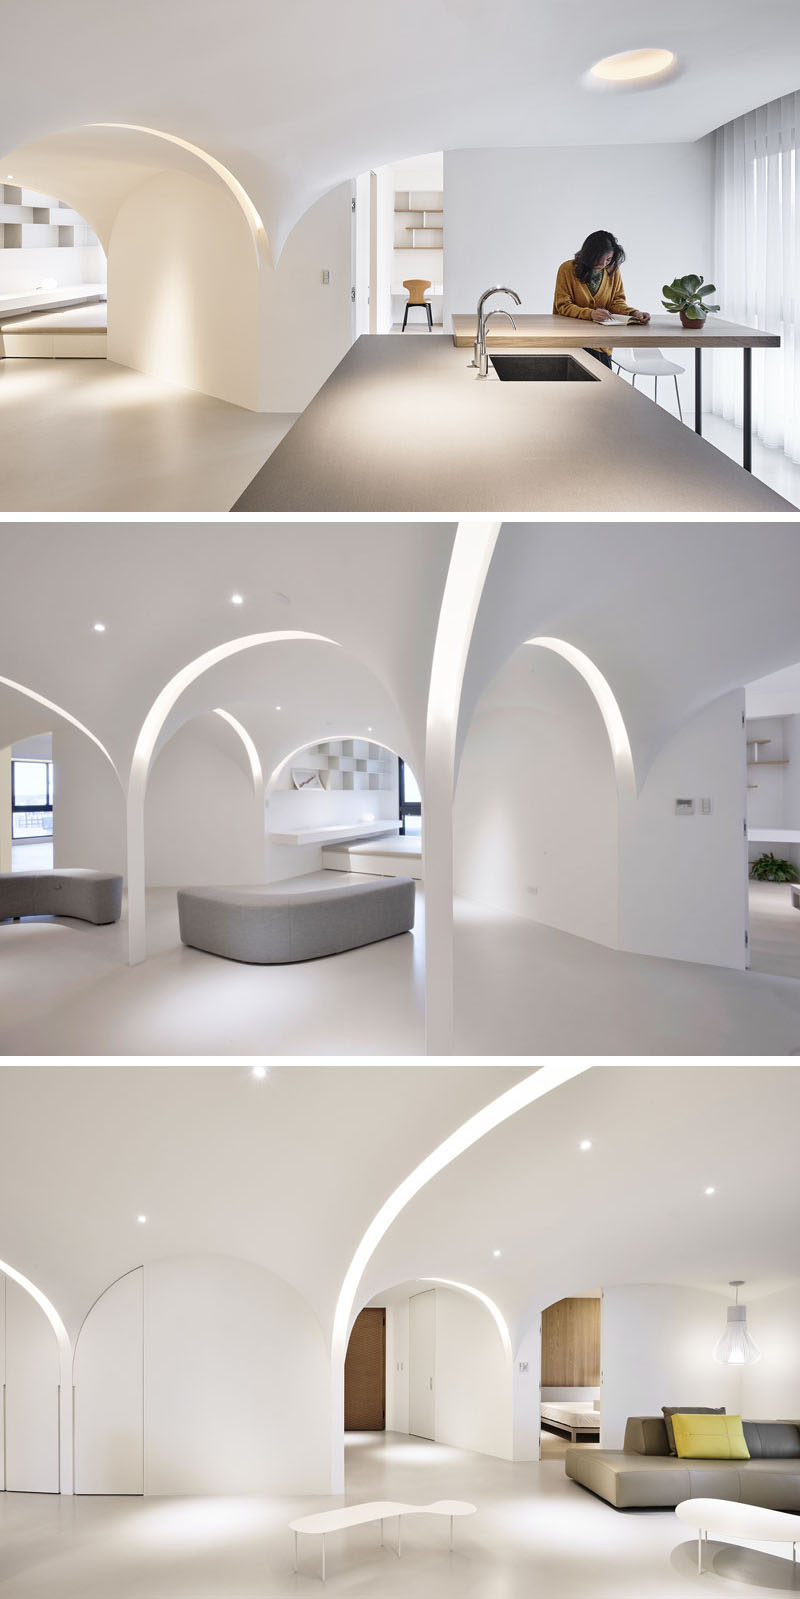 light-filled-archways-interior-design-040418-128-03-800x1599